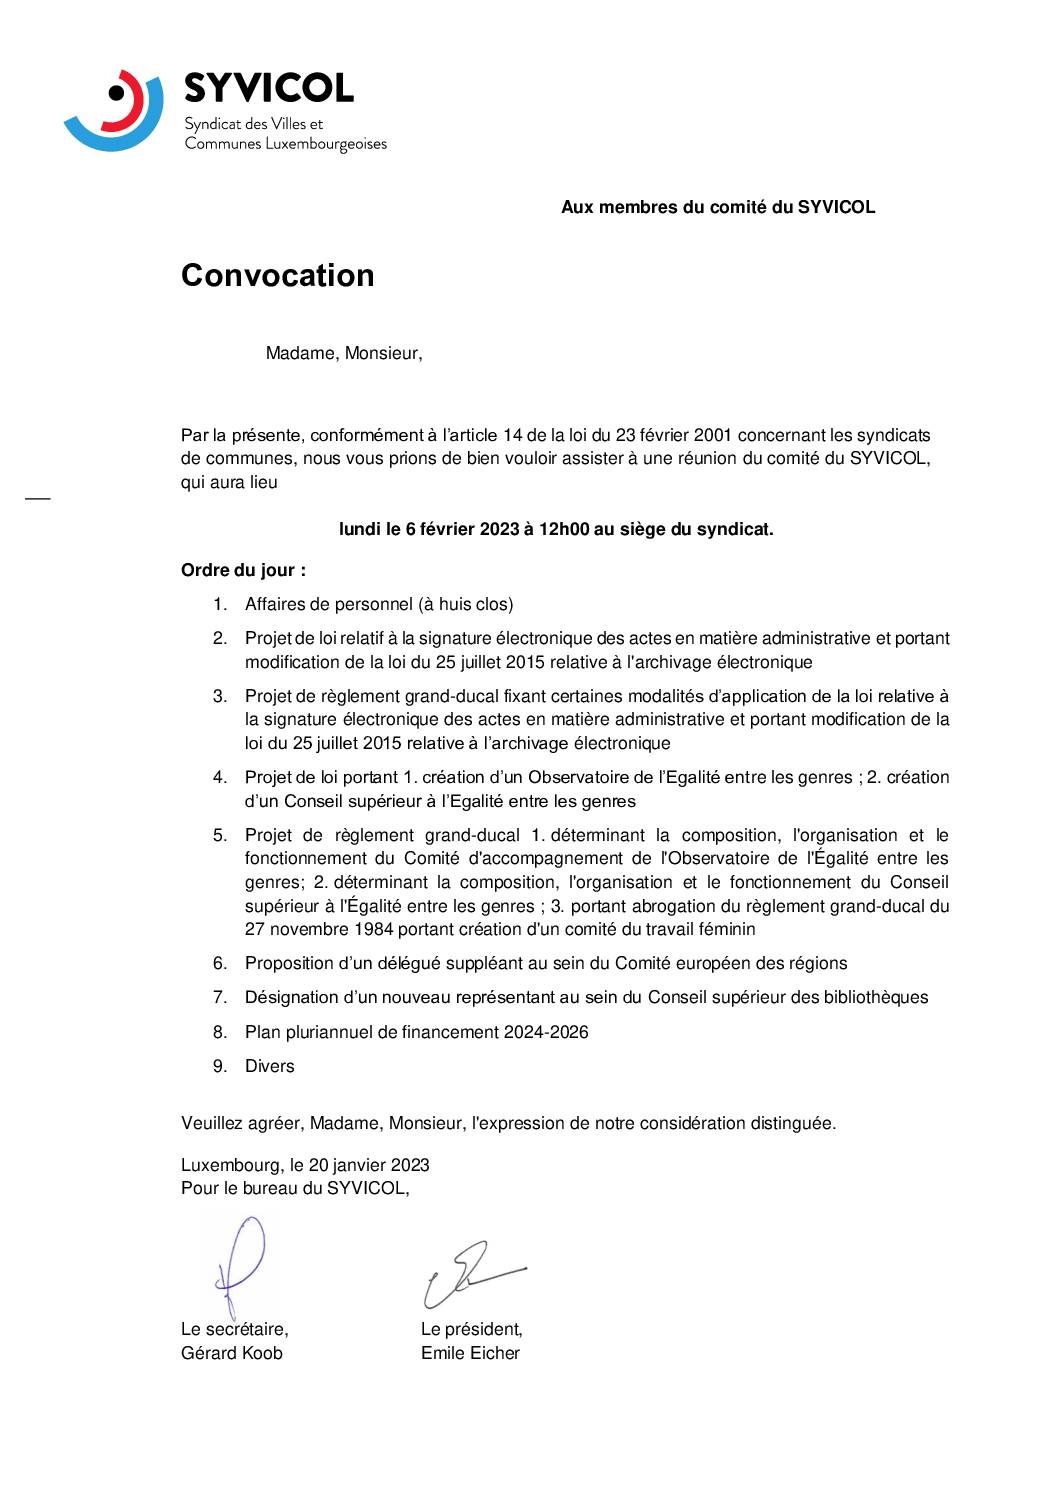 Convocation comité Syvicol 06.02.2023